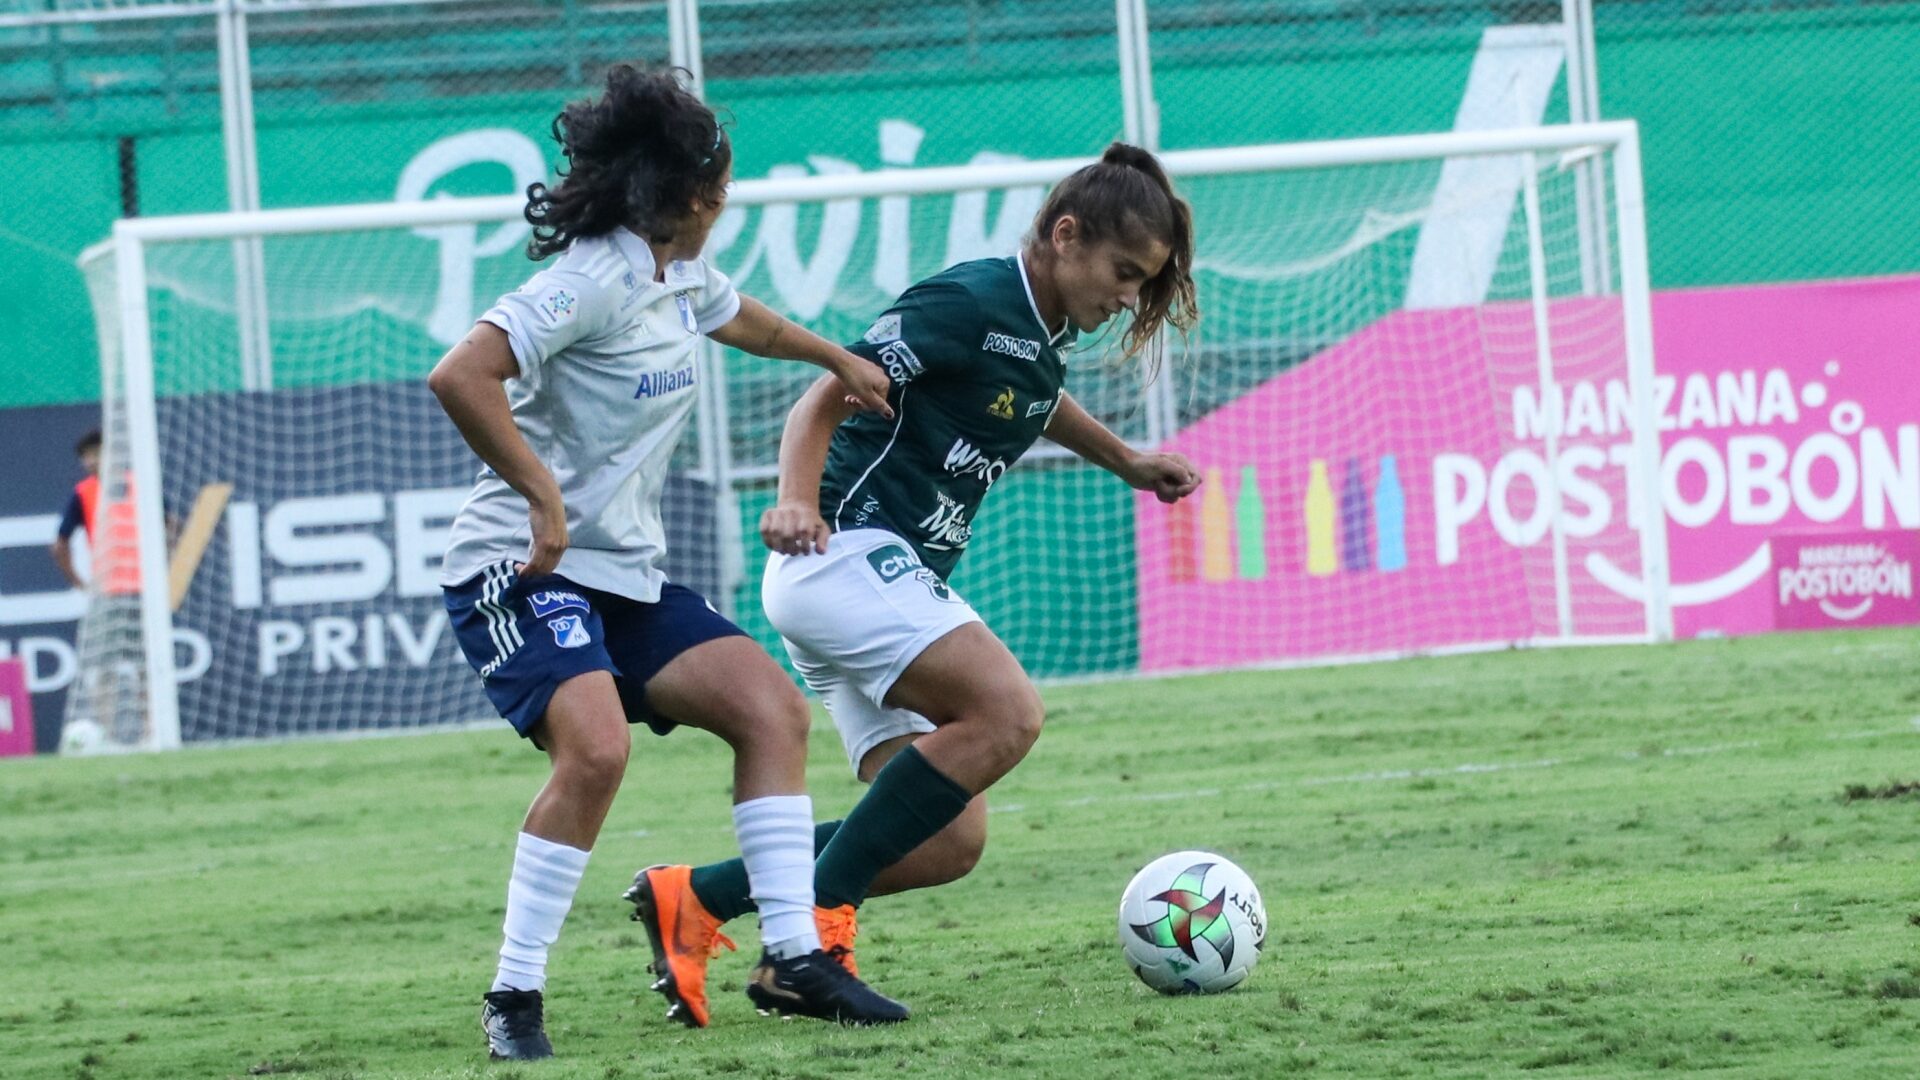 Deportivo Cali de Gisela Pino empata con Santa Fe y deja abiertas las semis en Colombia